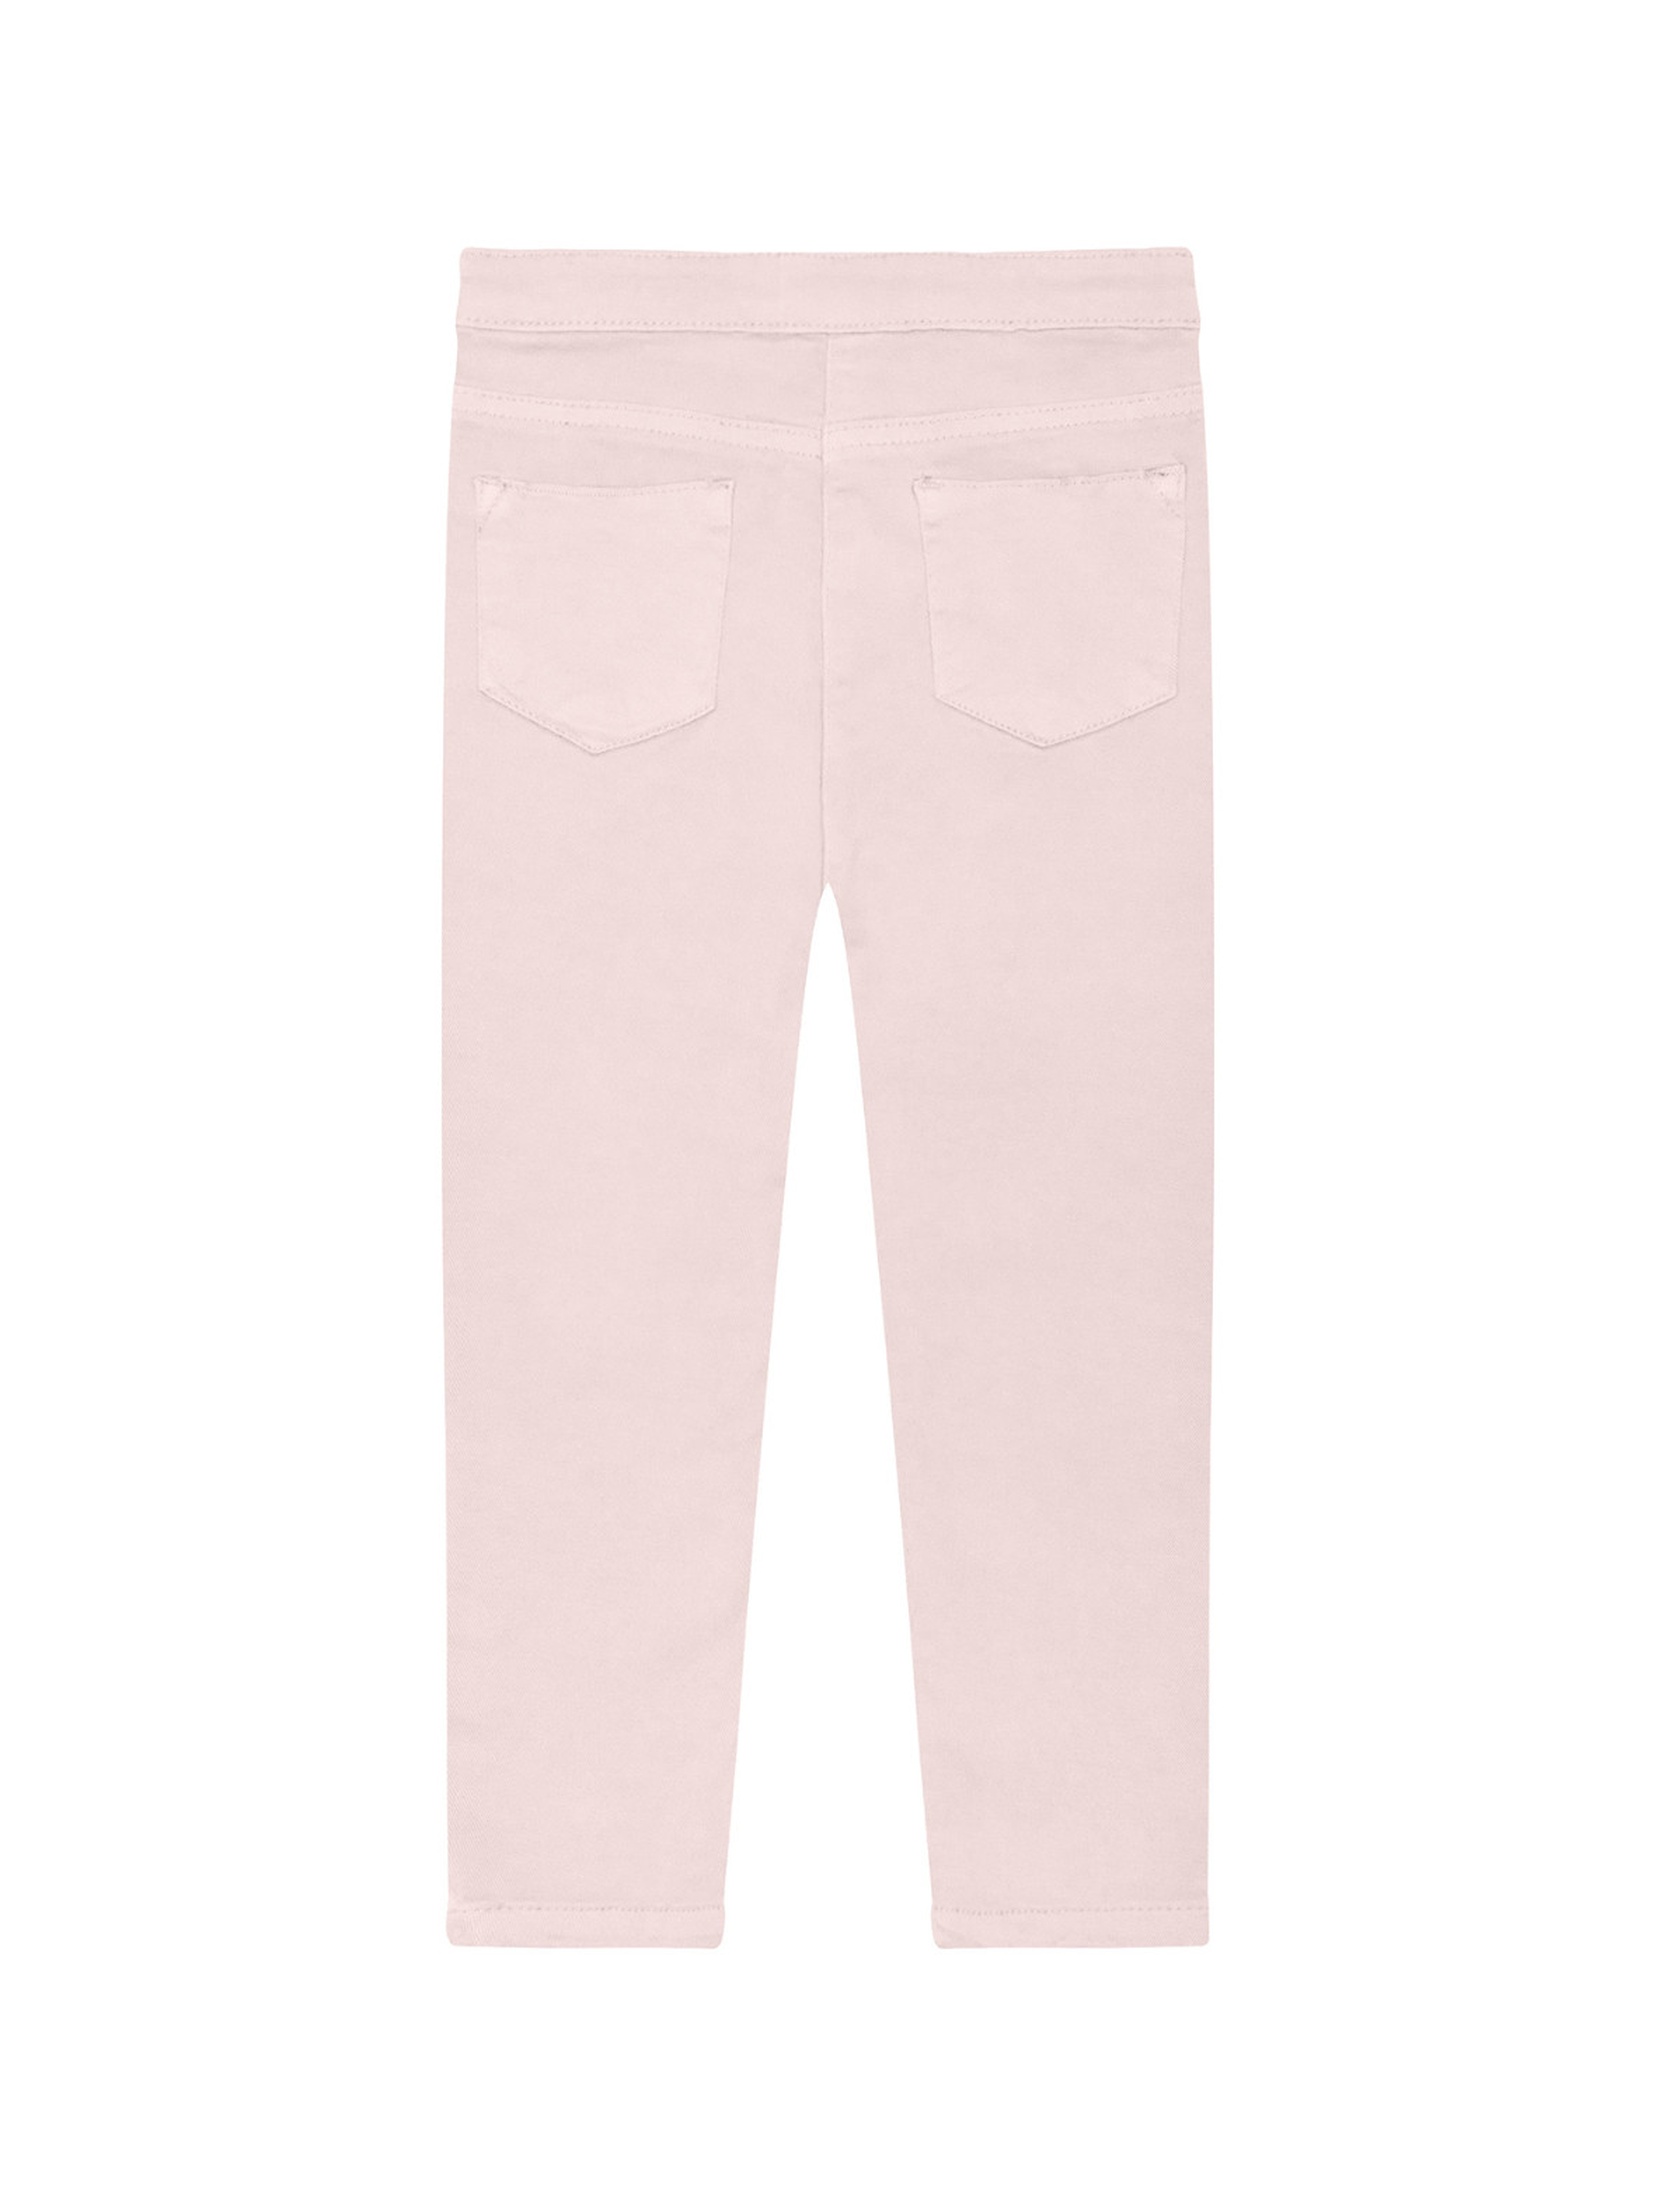 Jasno różowe spodnie niemowlęce z tkaniny